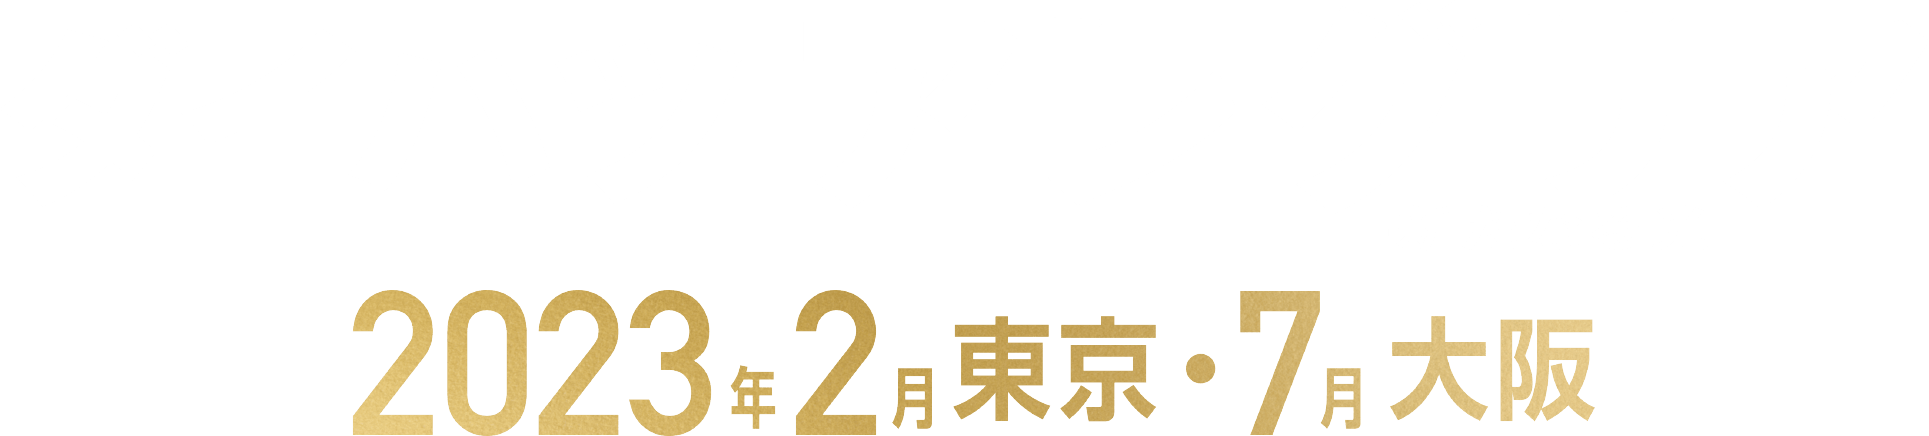 ダイハツ アレグリア -新たなる光- 2023年2月東京・7月大阪